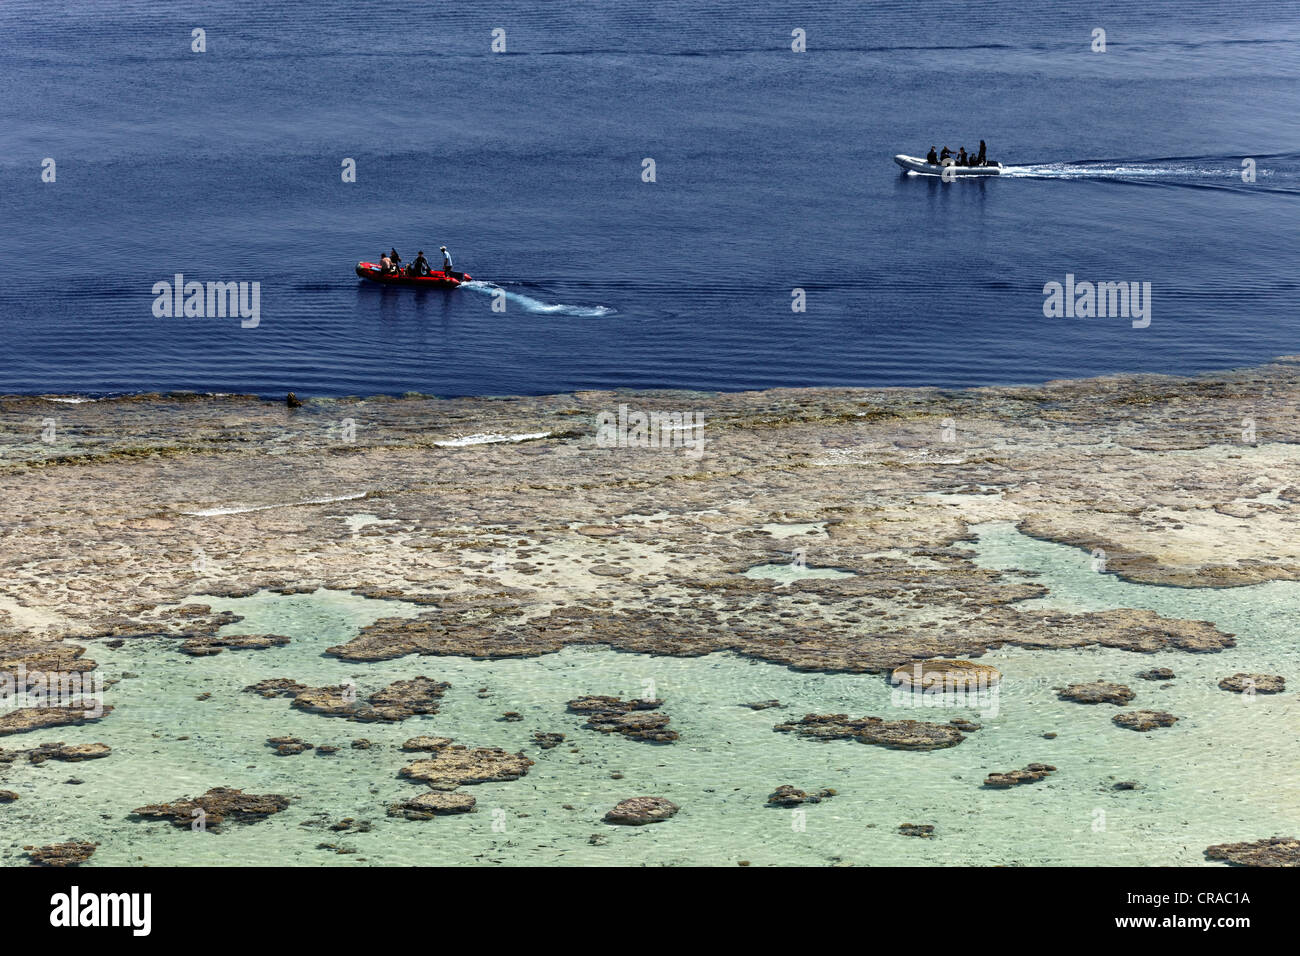 Dinghys caoutchouc ramasser des plongeurs de la partie supérieure du récif, Daedalus Reef, Egypte, Mer Rouge, Afrique Banque D'Images